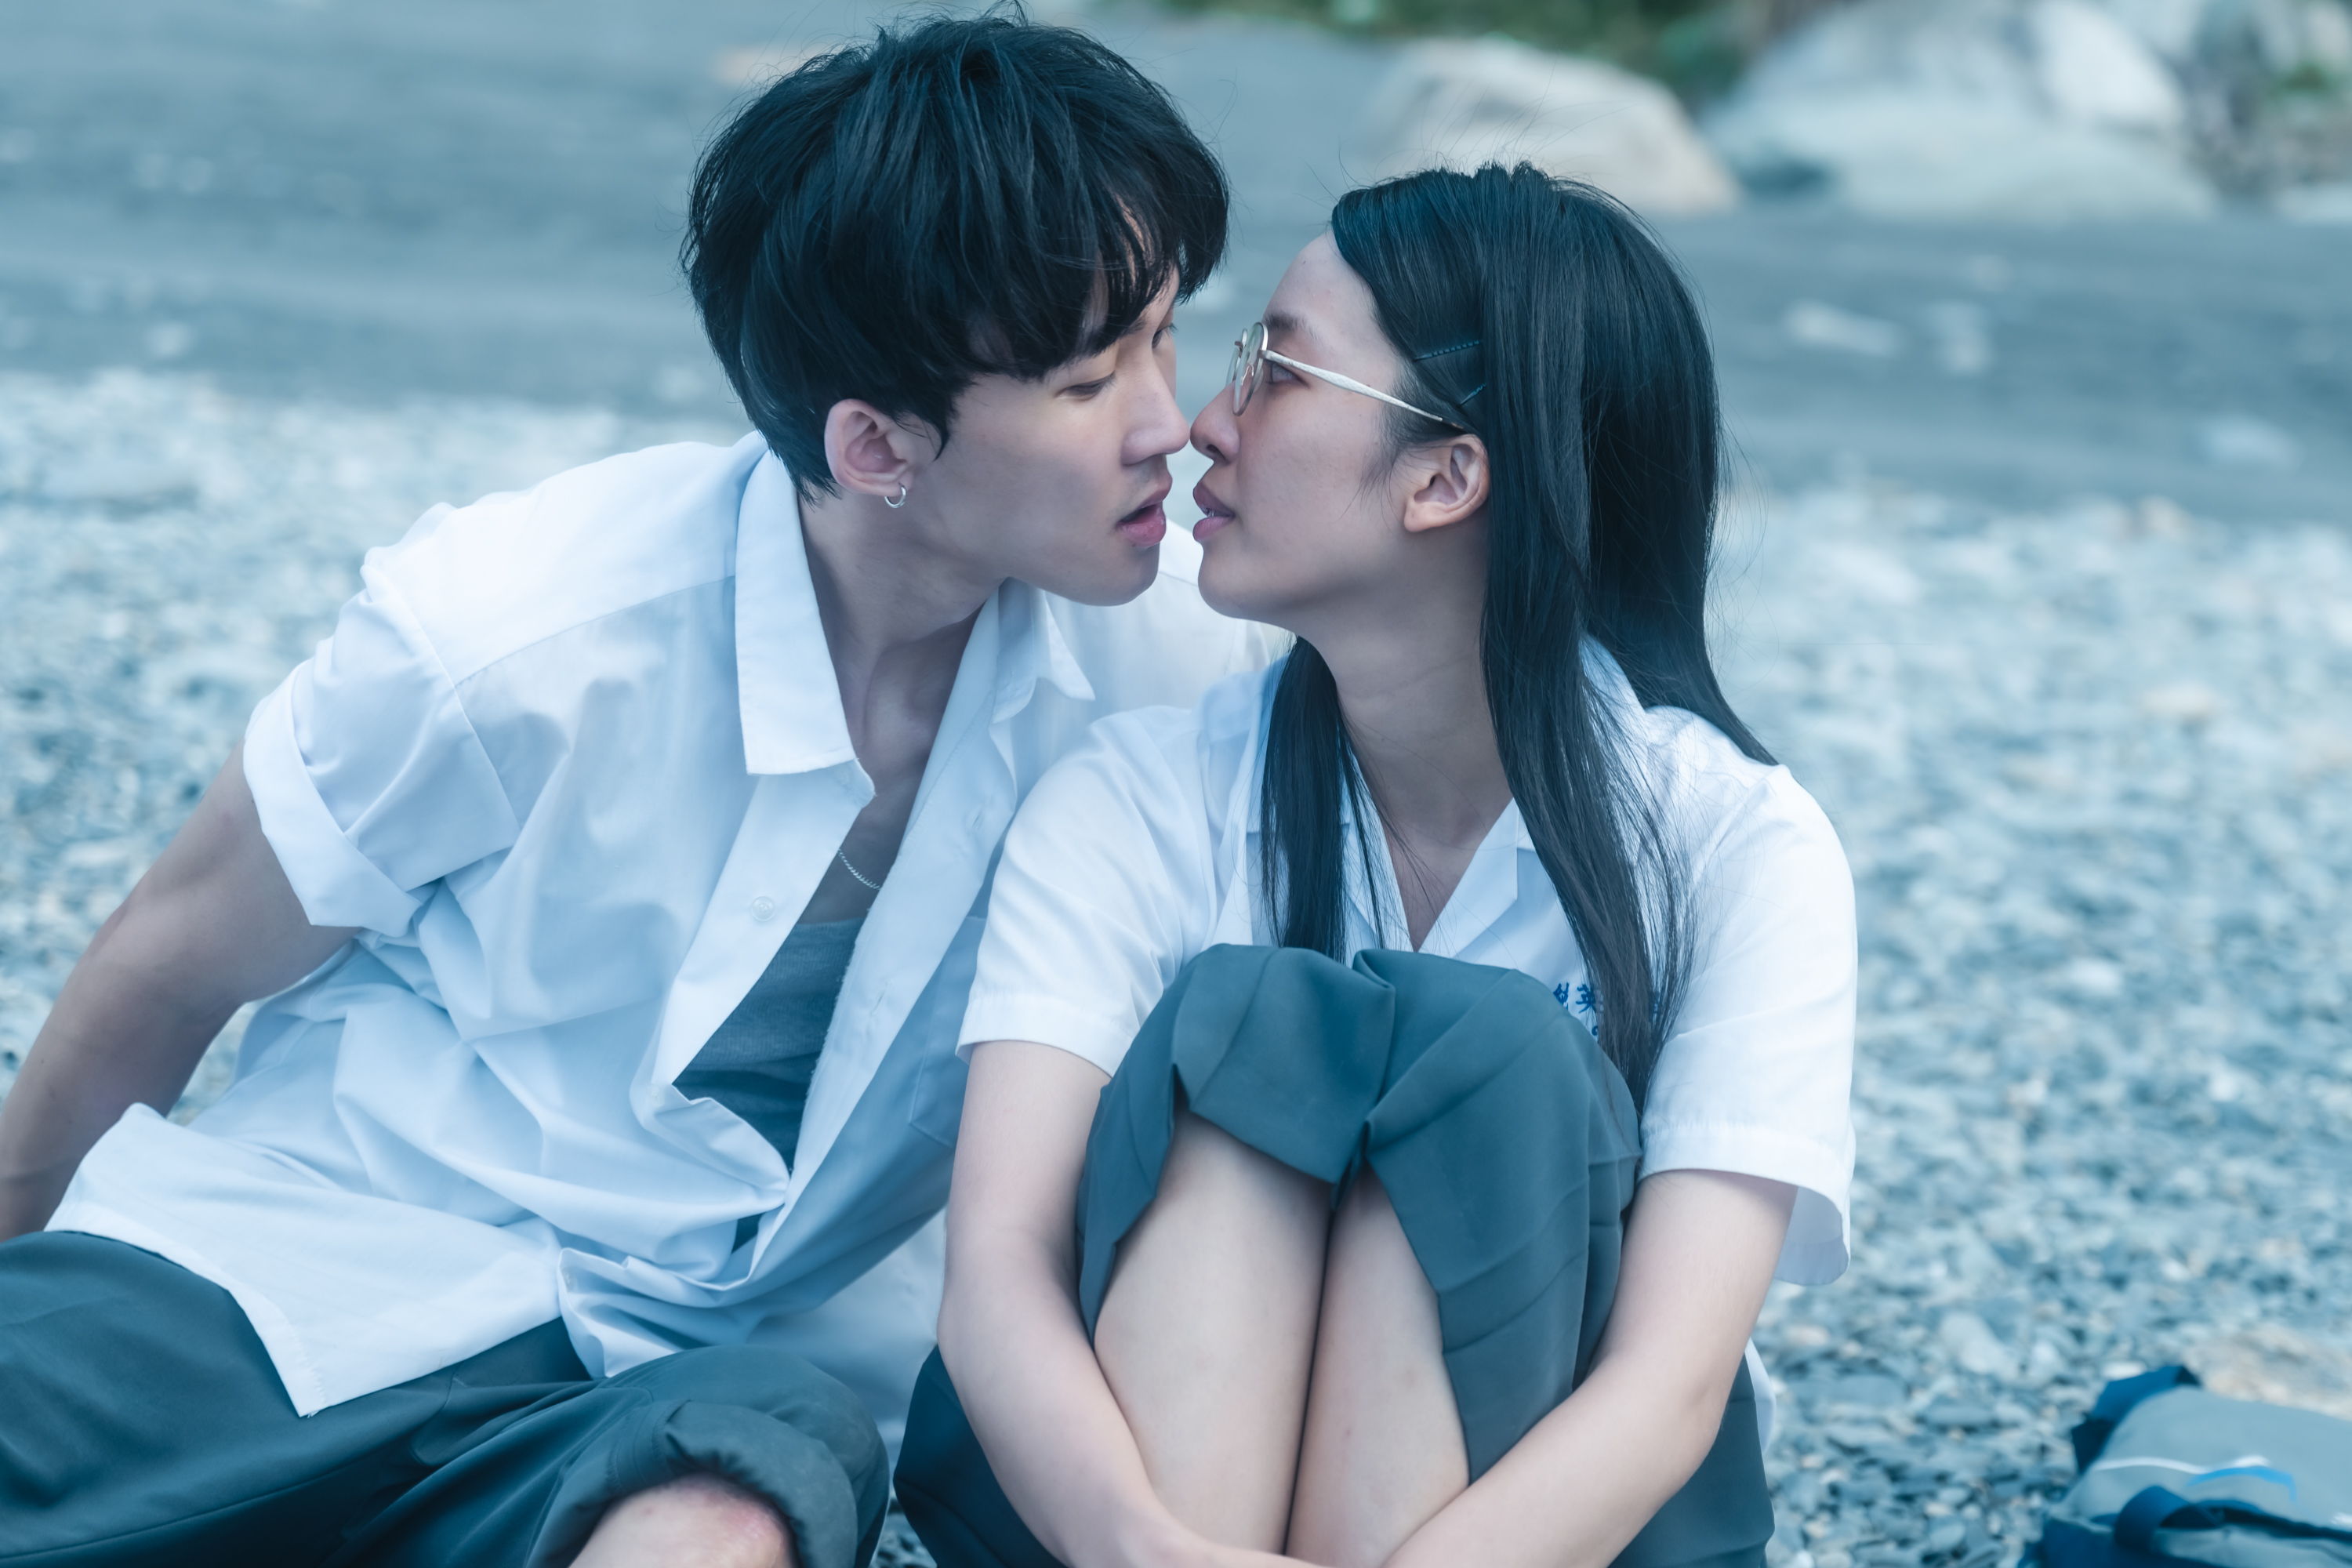 《小藍》由新生代演員王渝萱（右）、葉廷麒演出青少年對愛與性的摸索經驗-圖片